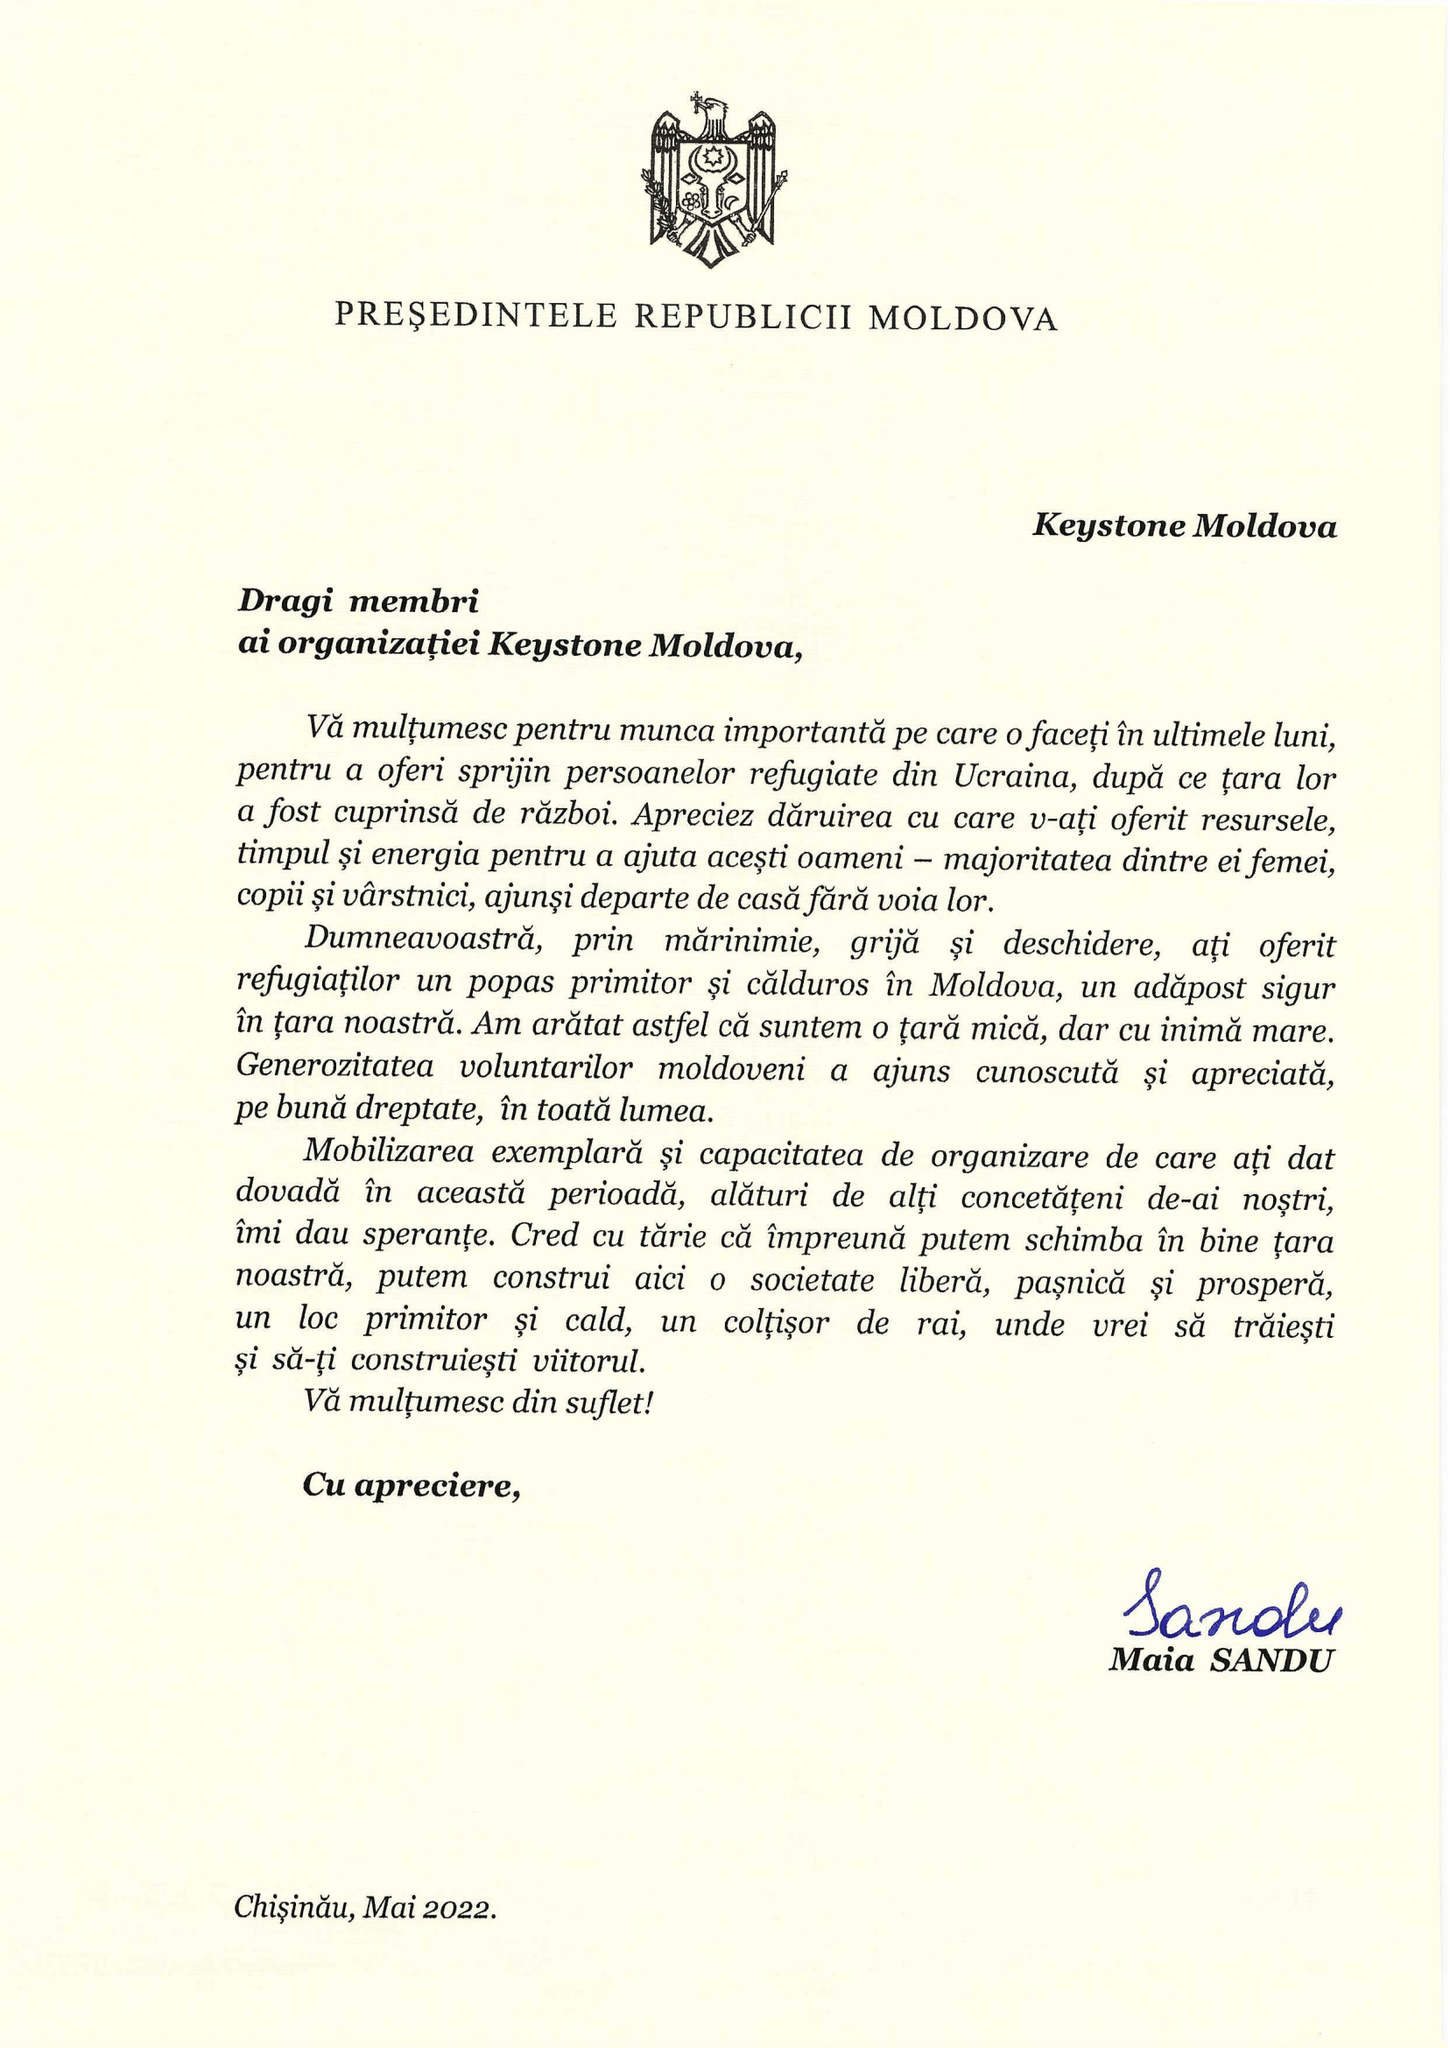 President Maia Sandu letter